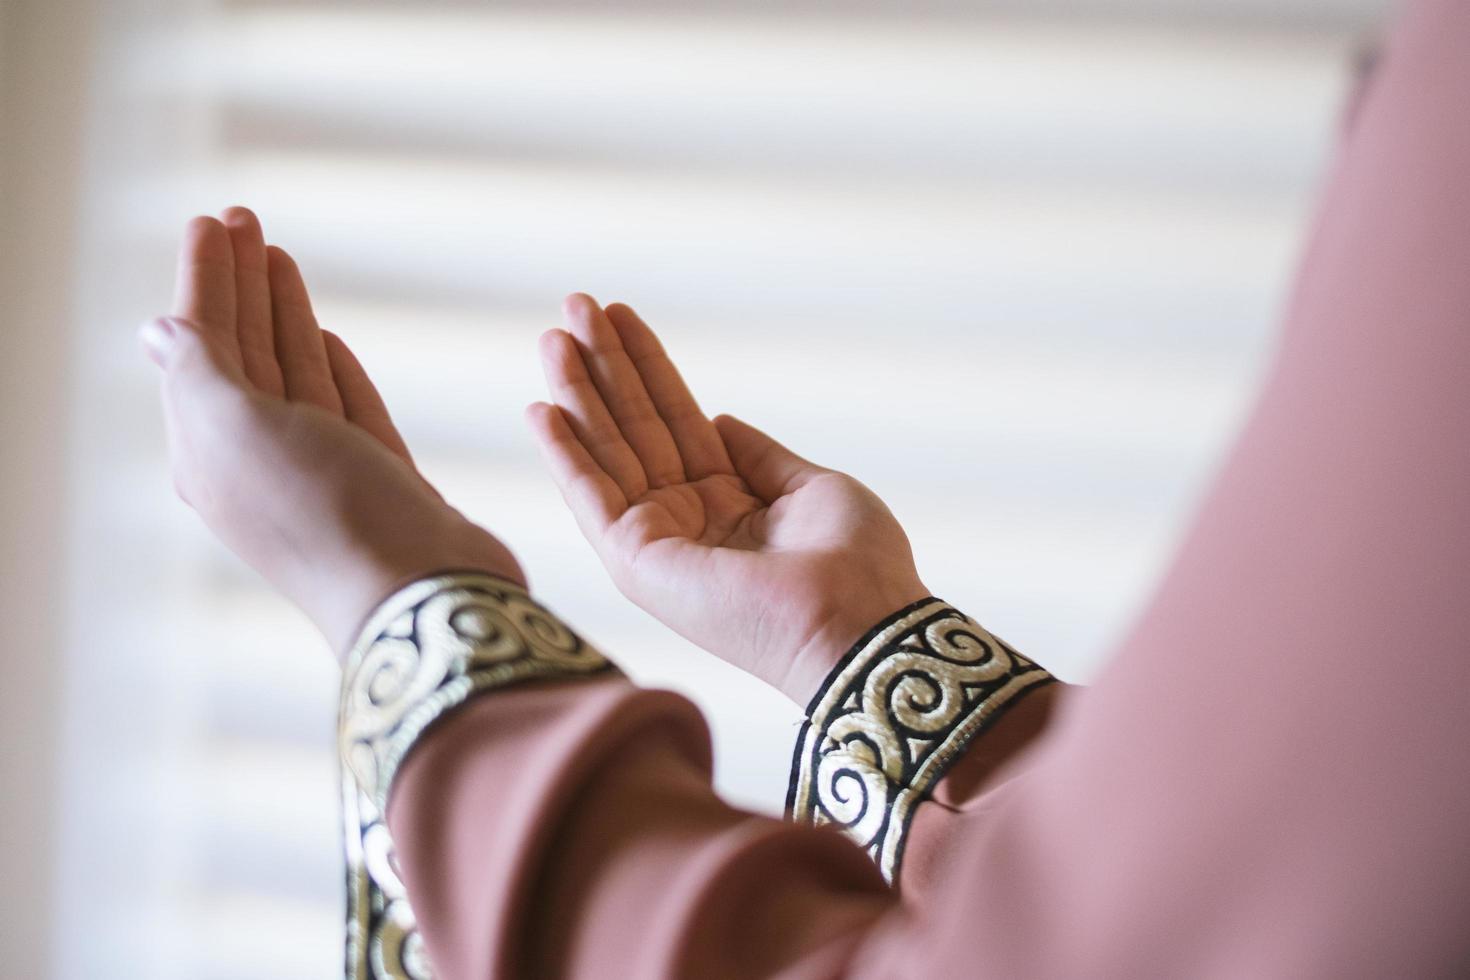 mãos de uma mulher muçulmana ou islâmica gesticulando enquanto orava em casa foto